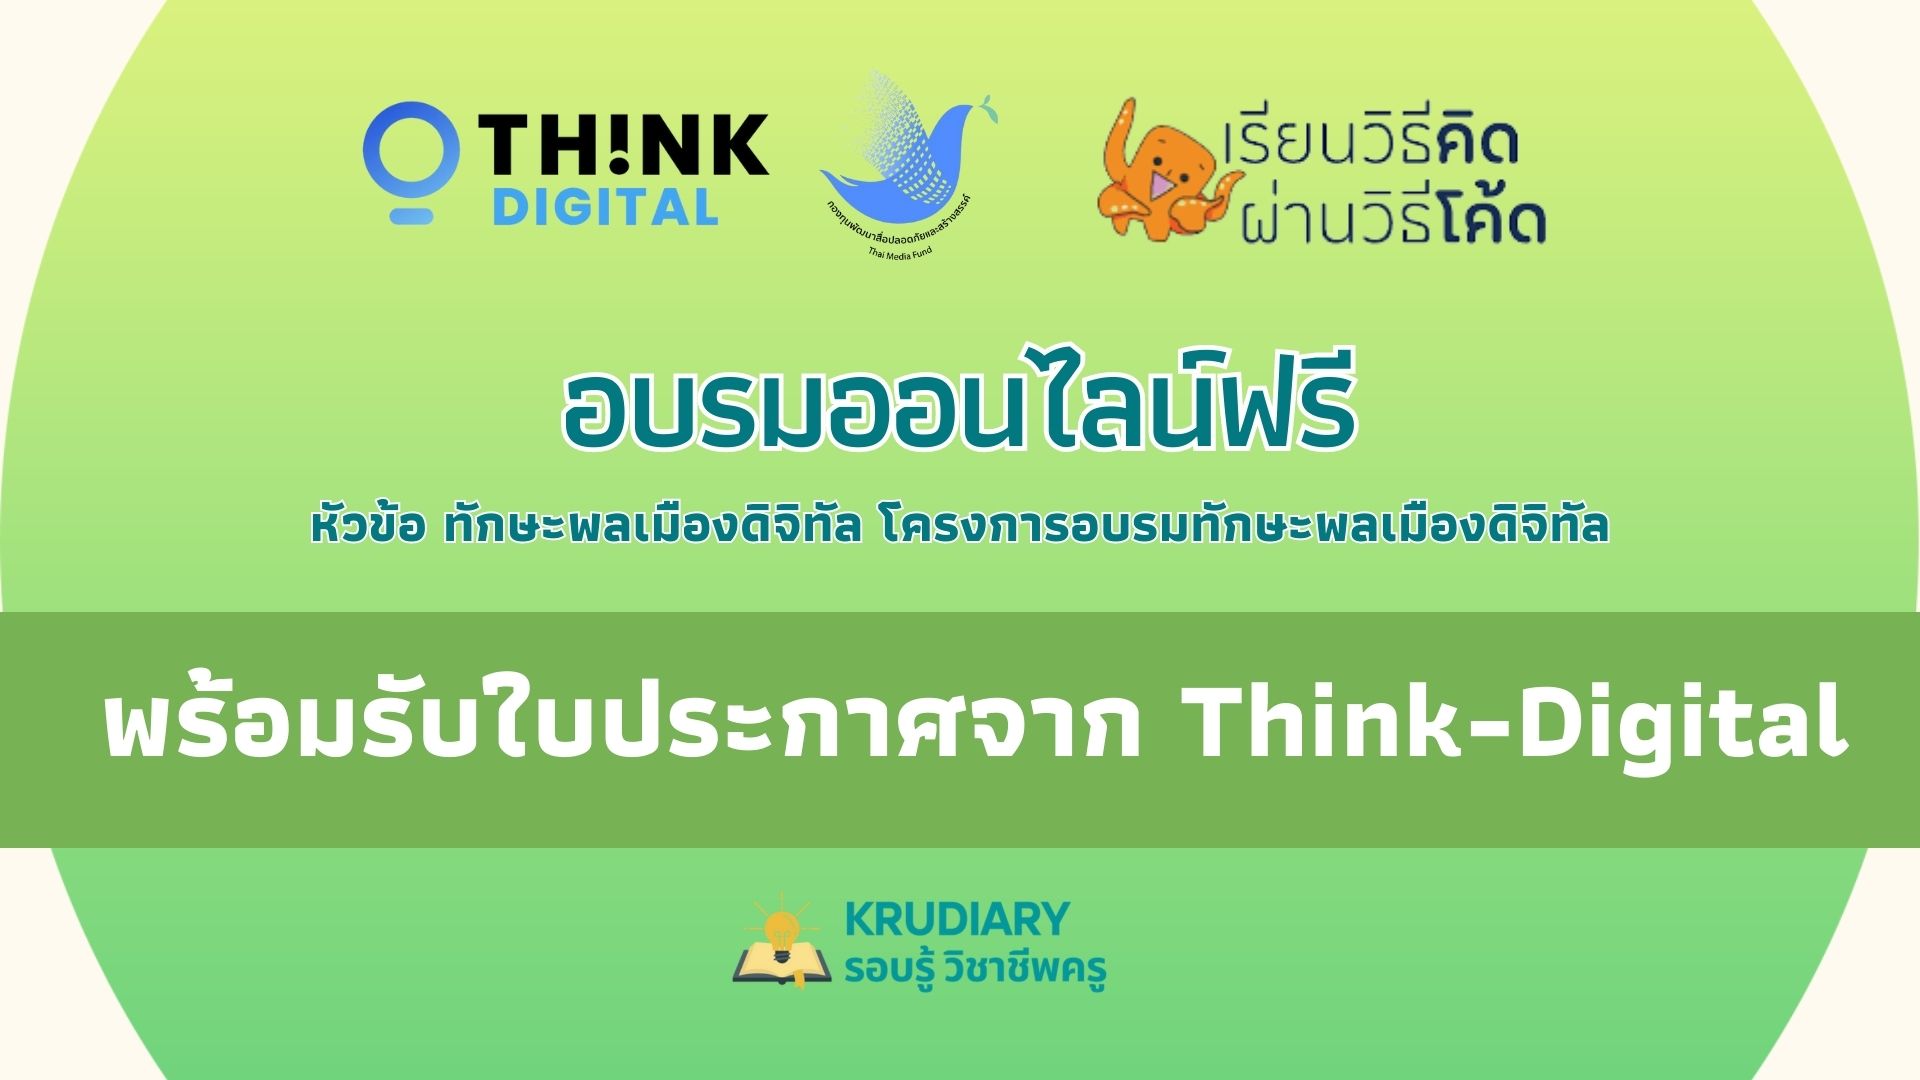 อบรมออนไลน์ ในหัวข้อ ทักษะพลเมืองดิจิทัล วันจันทร์ที่ 3 เมษายน 2566 อบรมฟรีพร้อมรับใบประกาศจาก Think-Digital